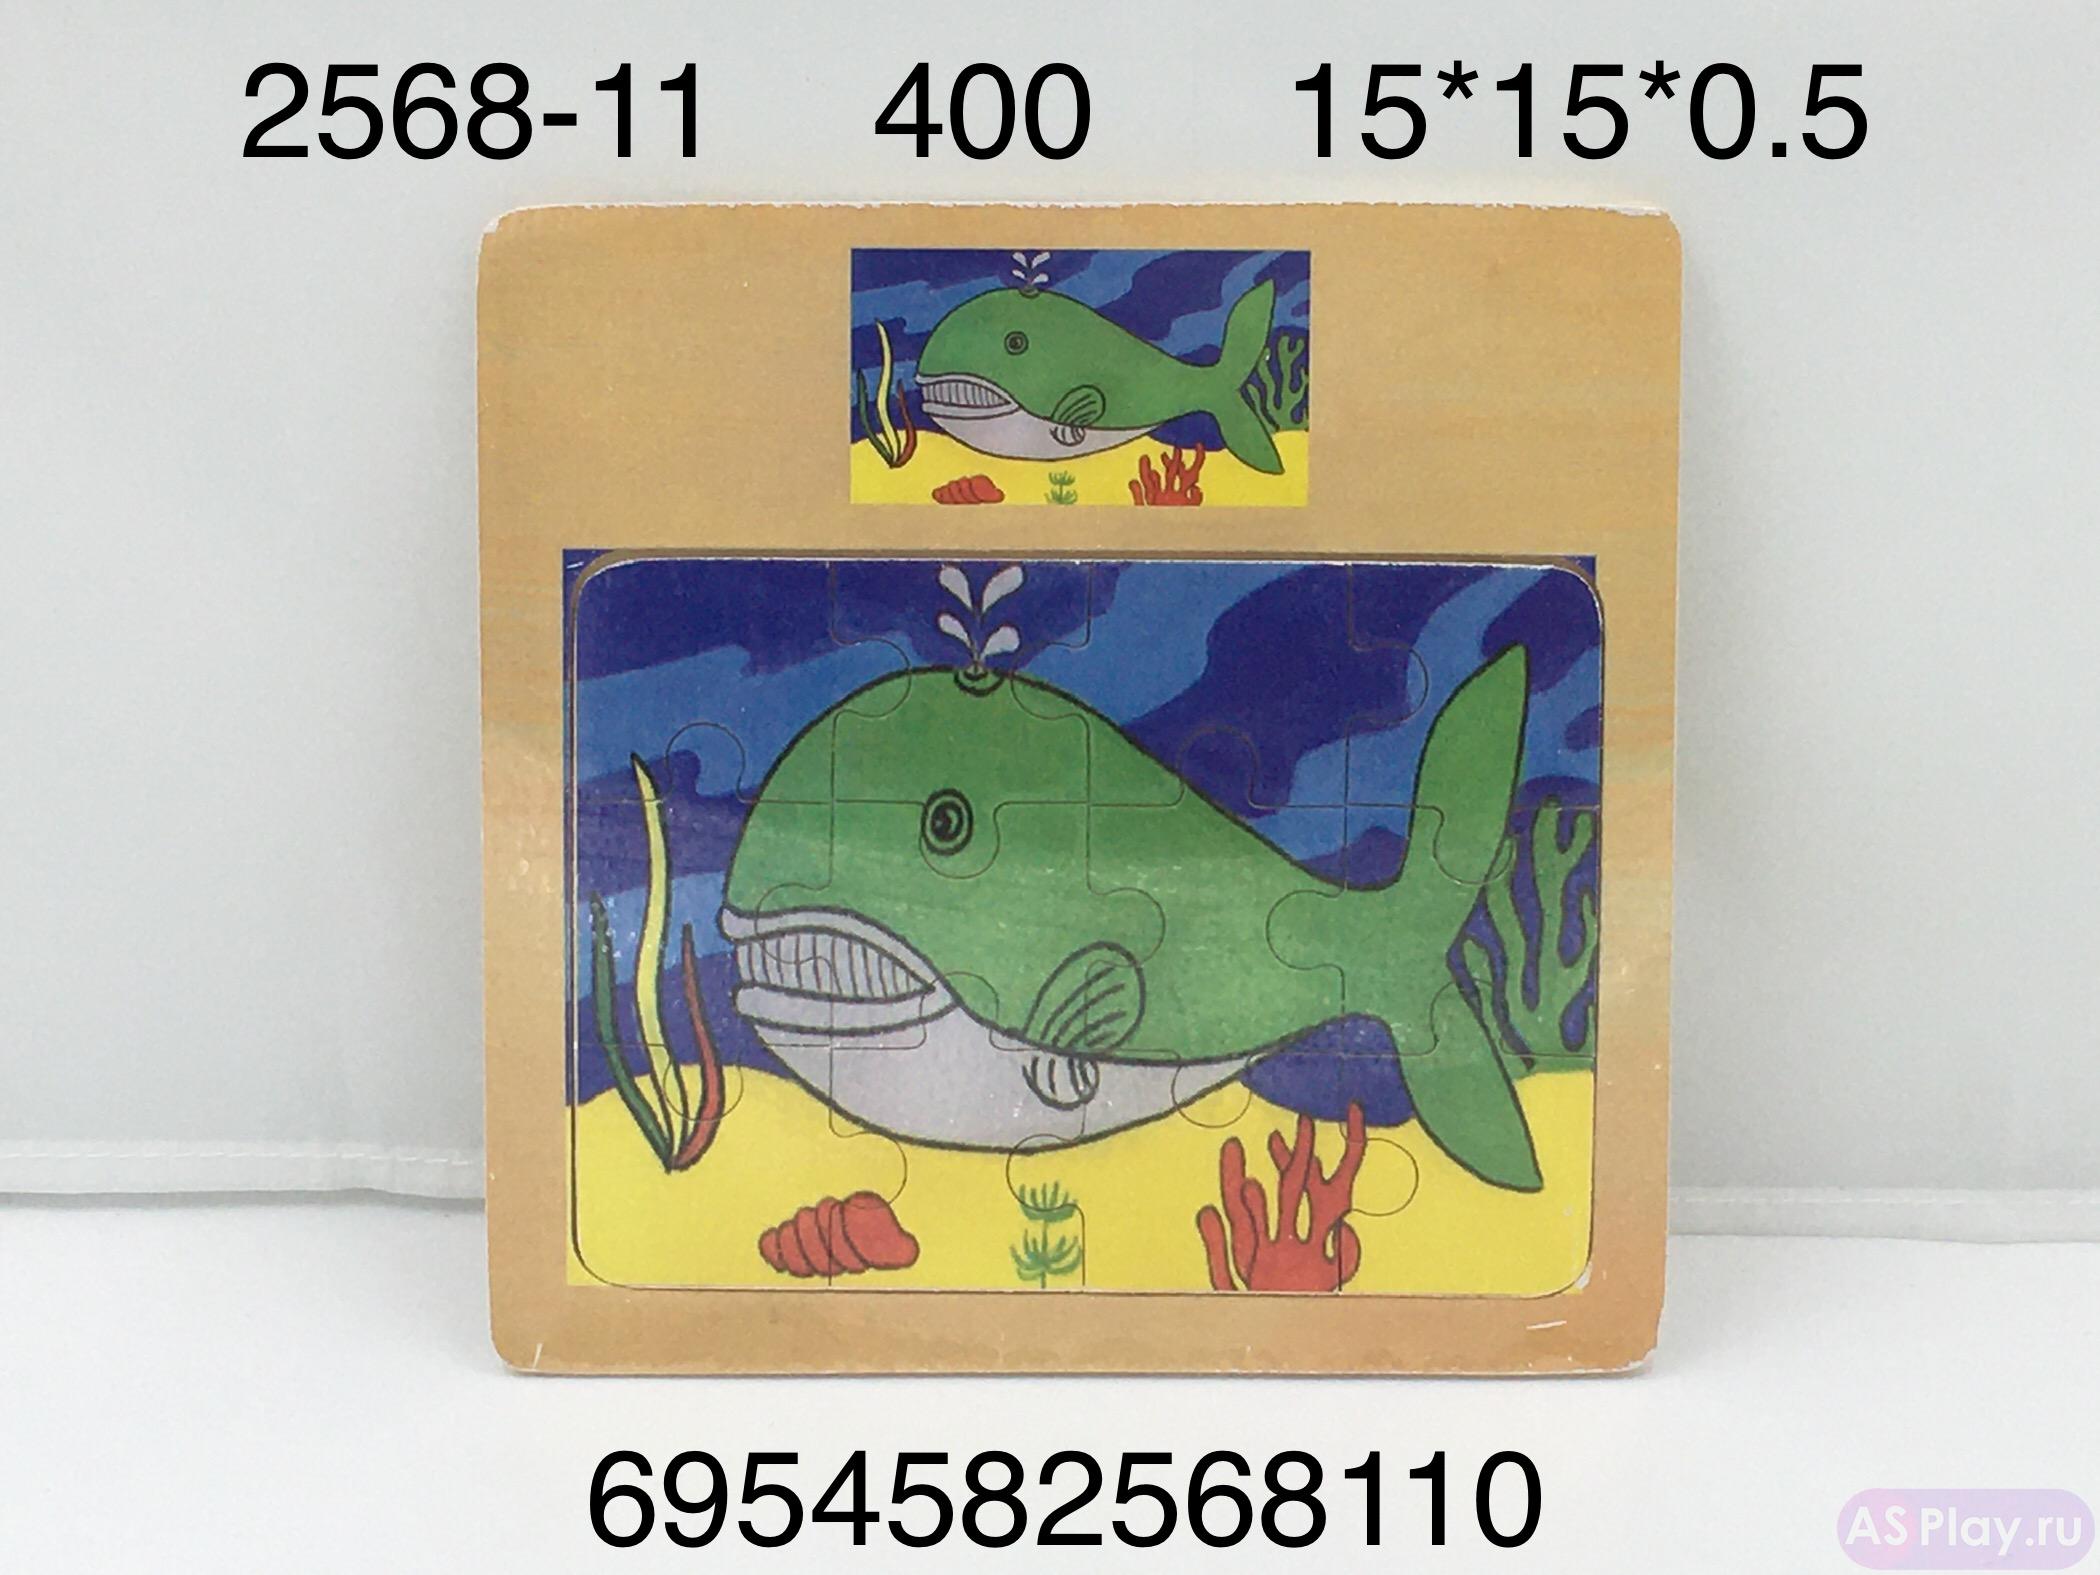 2568-11 Логика-игрушка Пазл (дерево), 400 шт. в кор. 2568-11